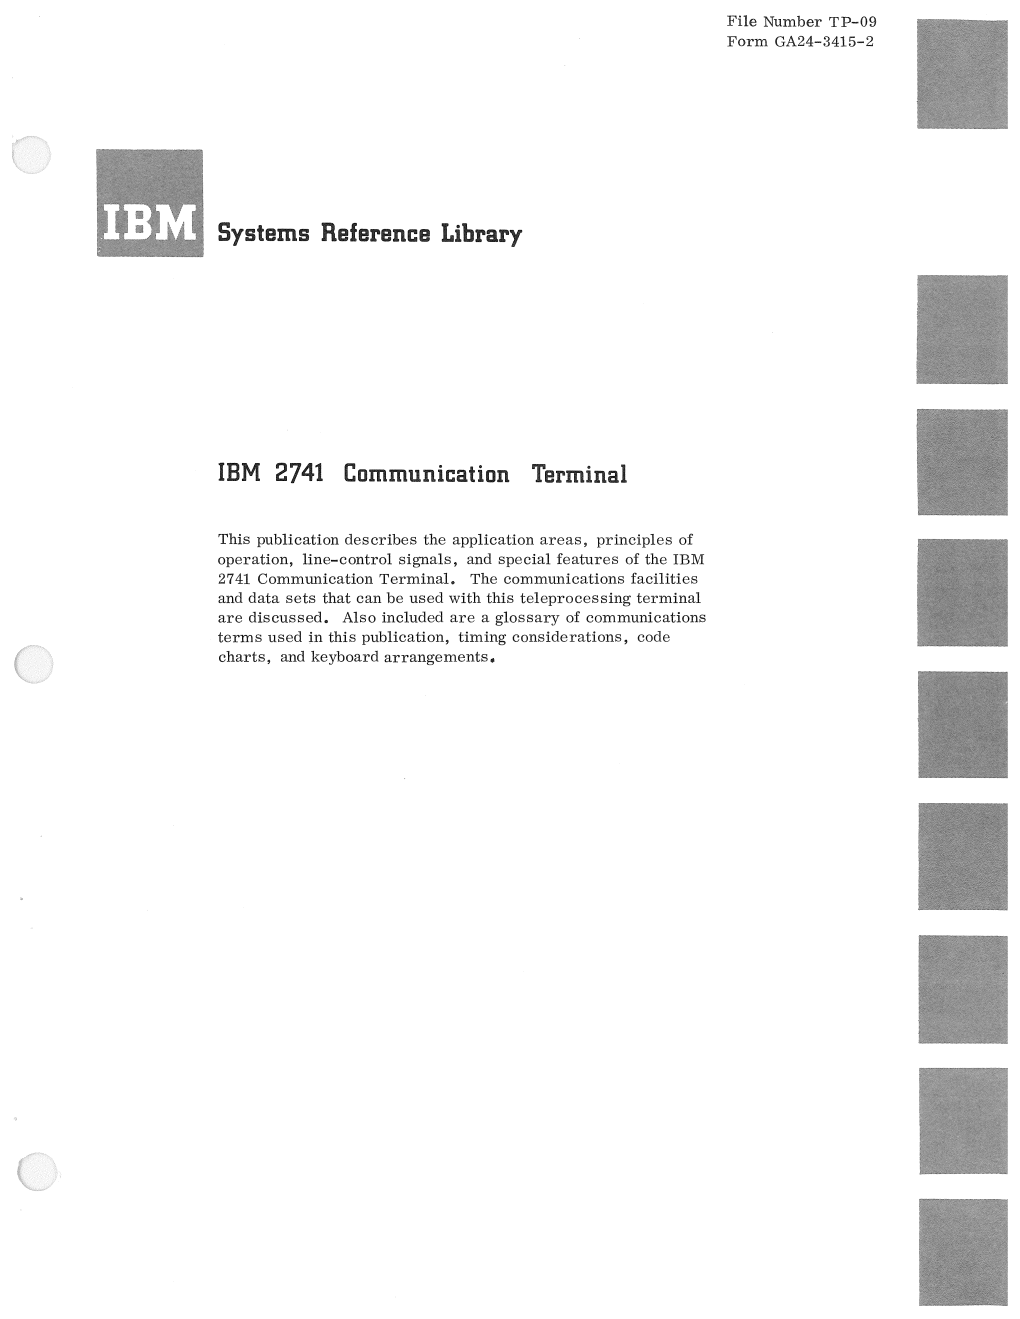 IBM 2741 Communication Terminal